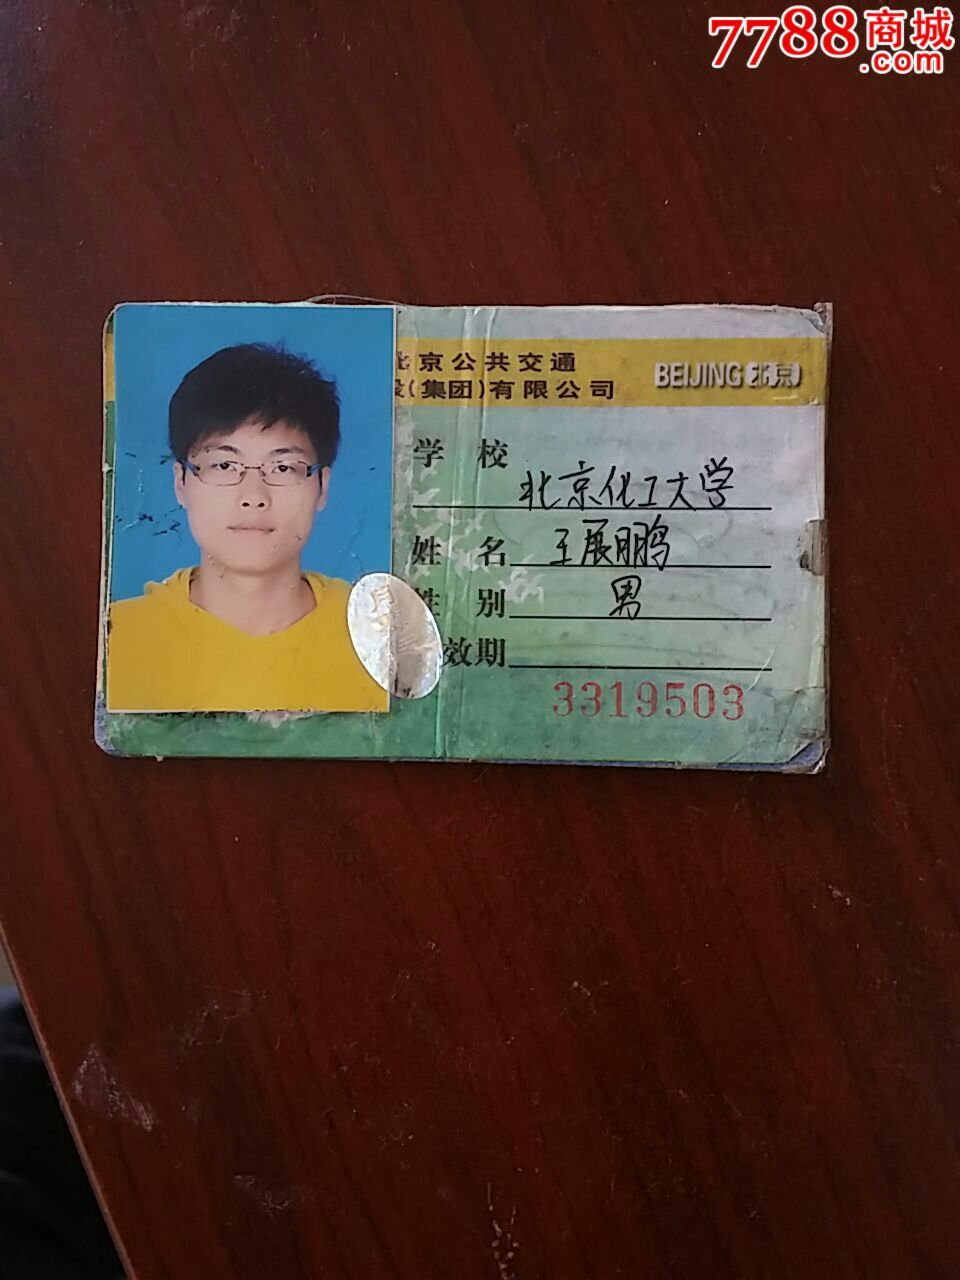 北京市学生公交卡